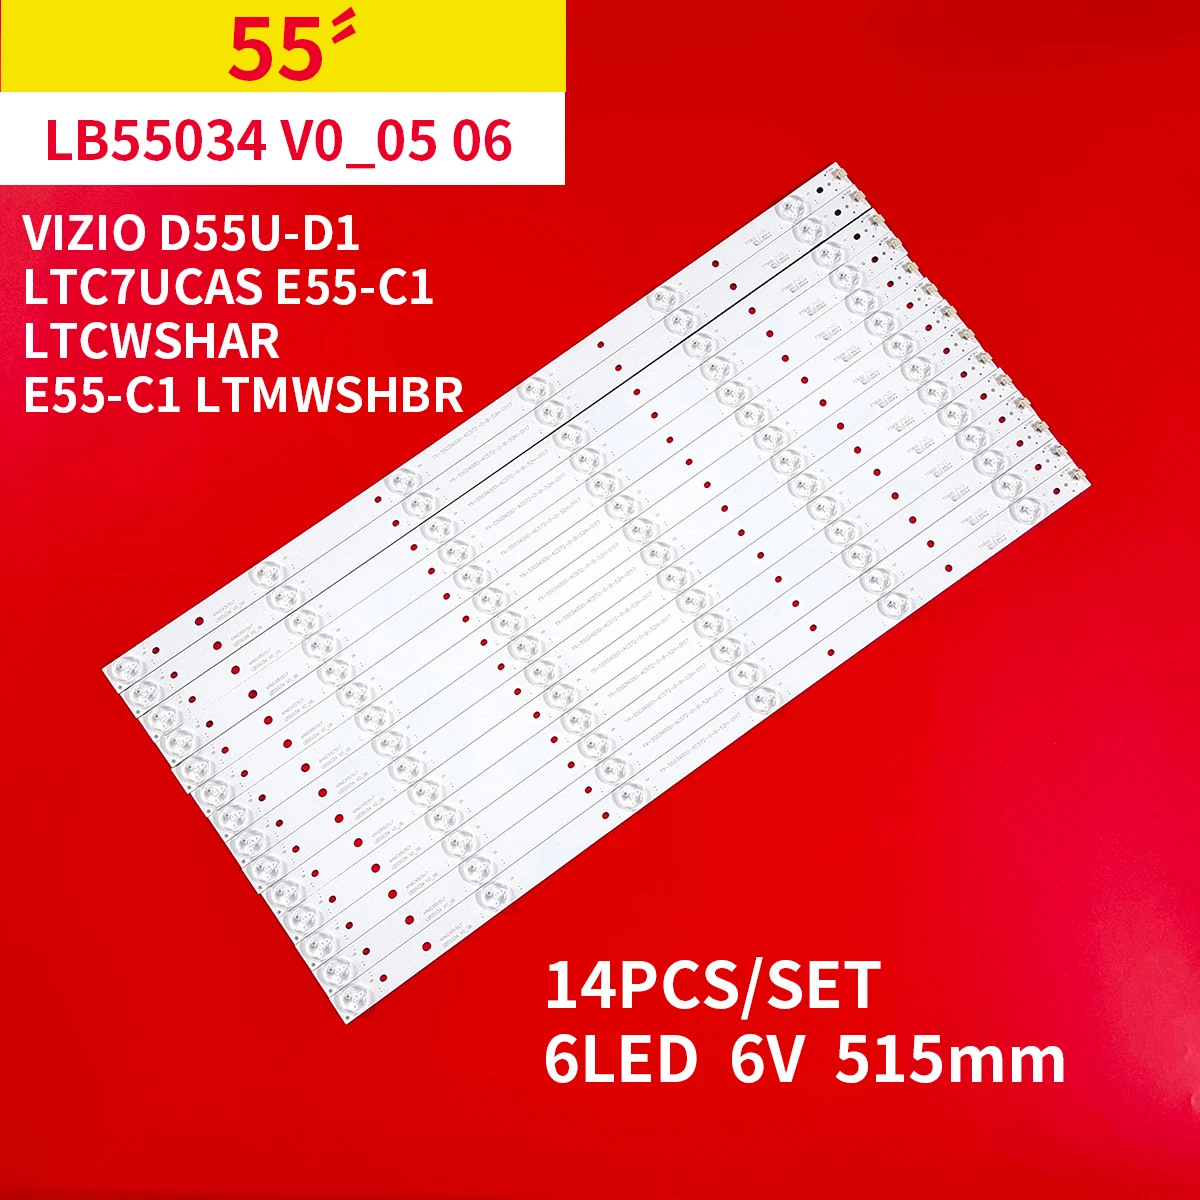 

14 PCS/set LED Backlight strip for Vizio E55-C1 D55U-D1 LB55034 V0_06 TPT550J1-DUYSHA.G REV:S1F GJ-D2P5 2K15-550-D712-V6